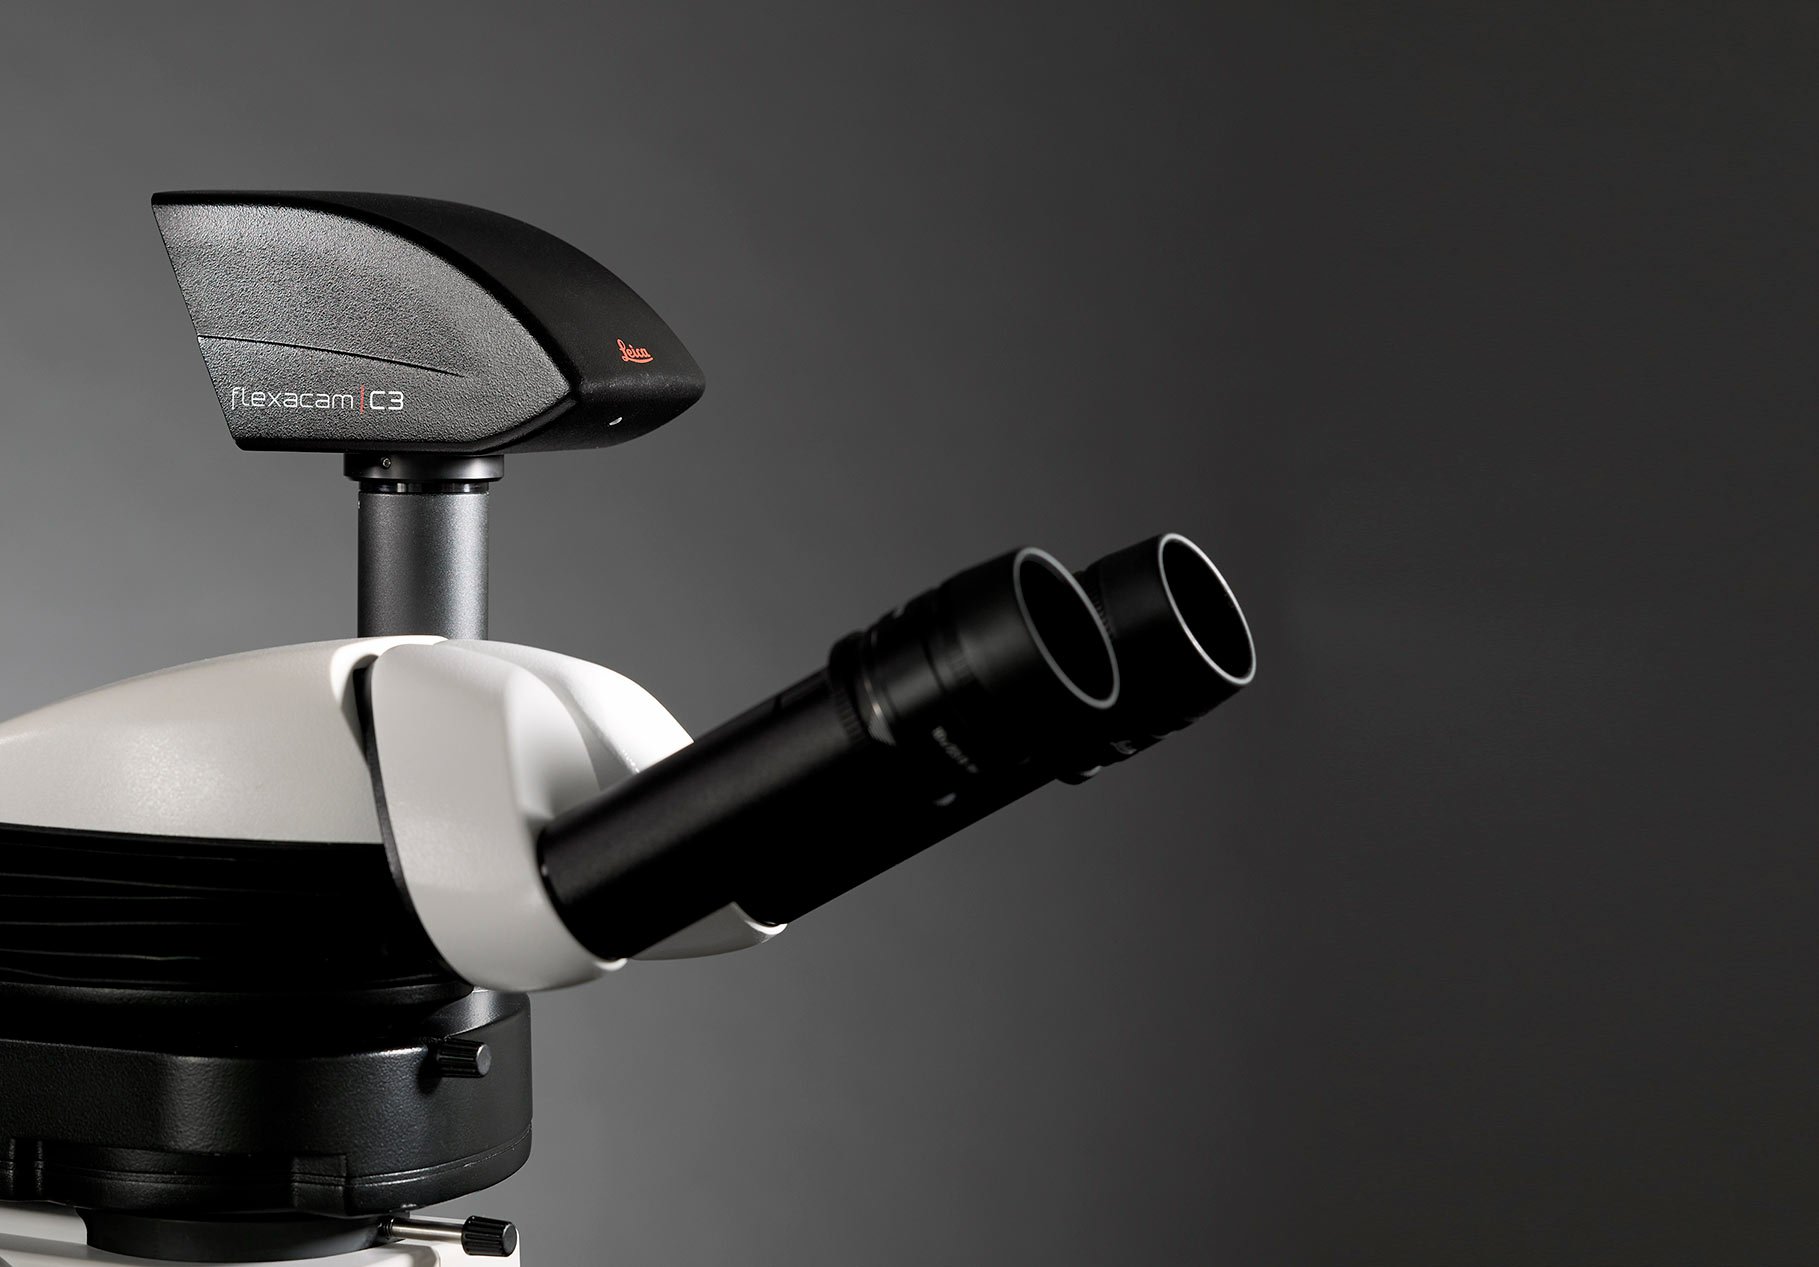 Kamera Mikroskop Leica Flexacam C3 - dipasok oleh IDM Instruments Australia